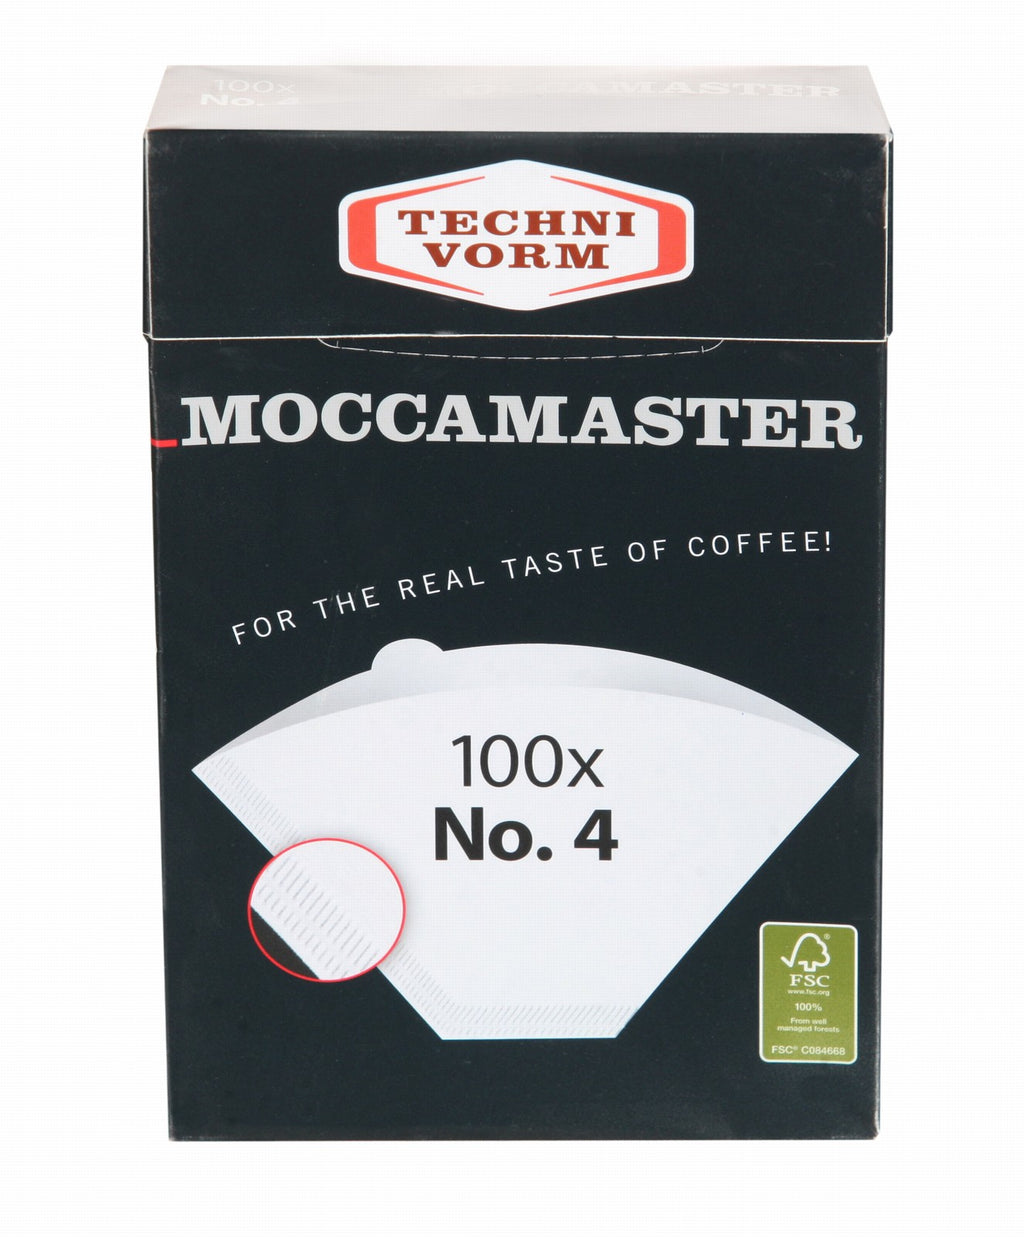 Moccamaster Paper Filters KBGT Rösterei – Kaffee 4) Zermatt and KBG Select (No